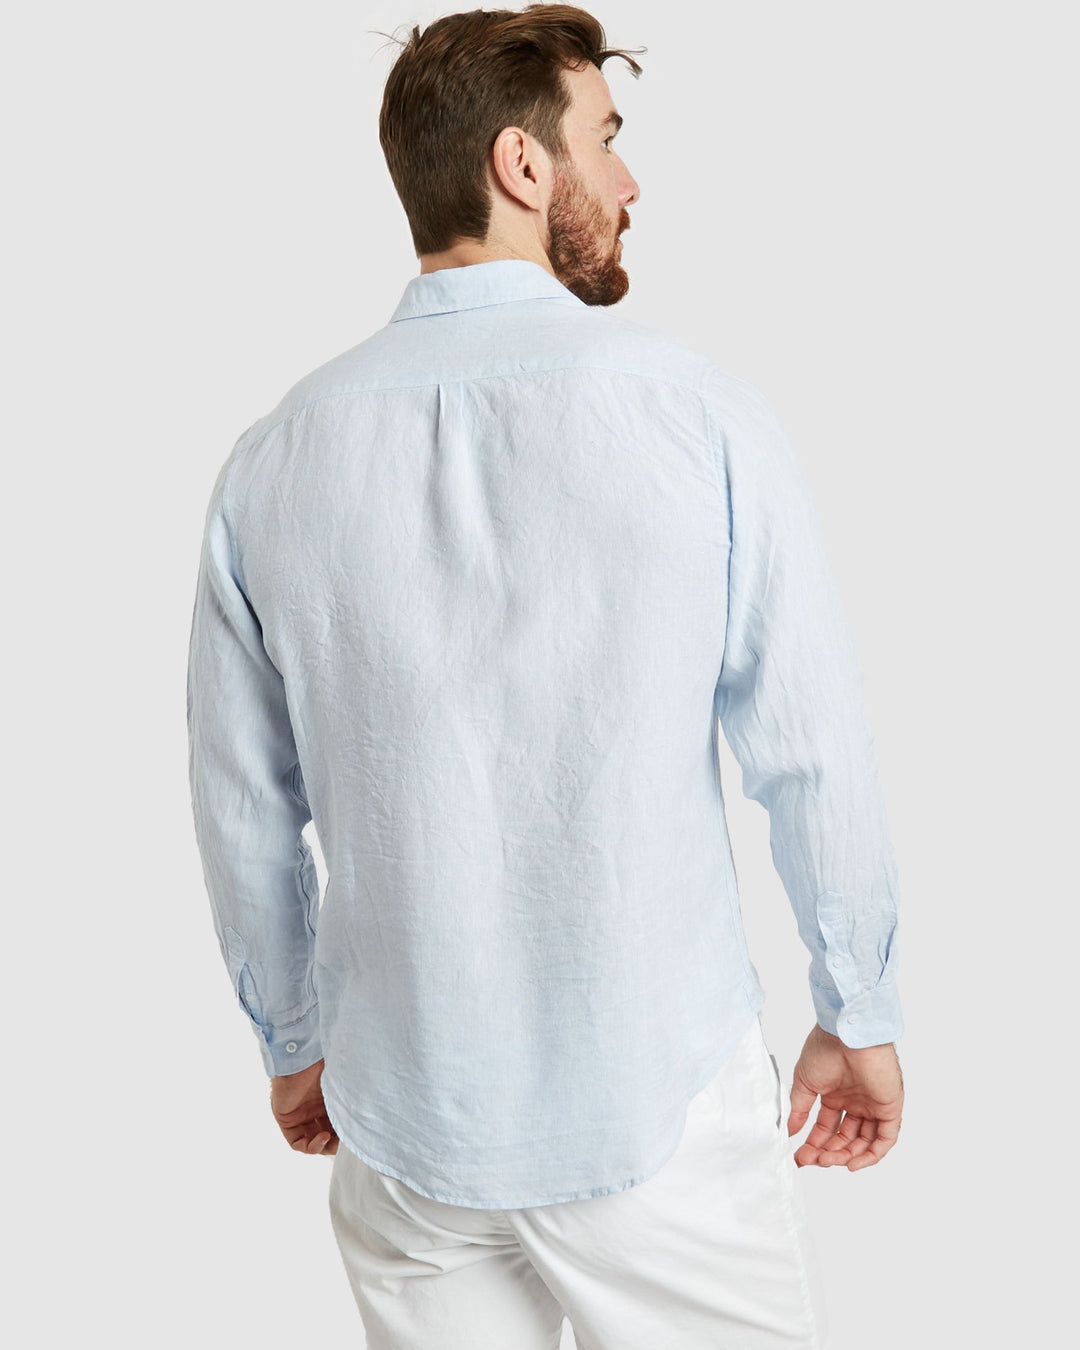 Tulum-Casual Sky Linen Shirt Long Sleeve